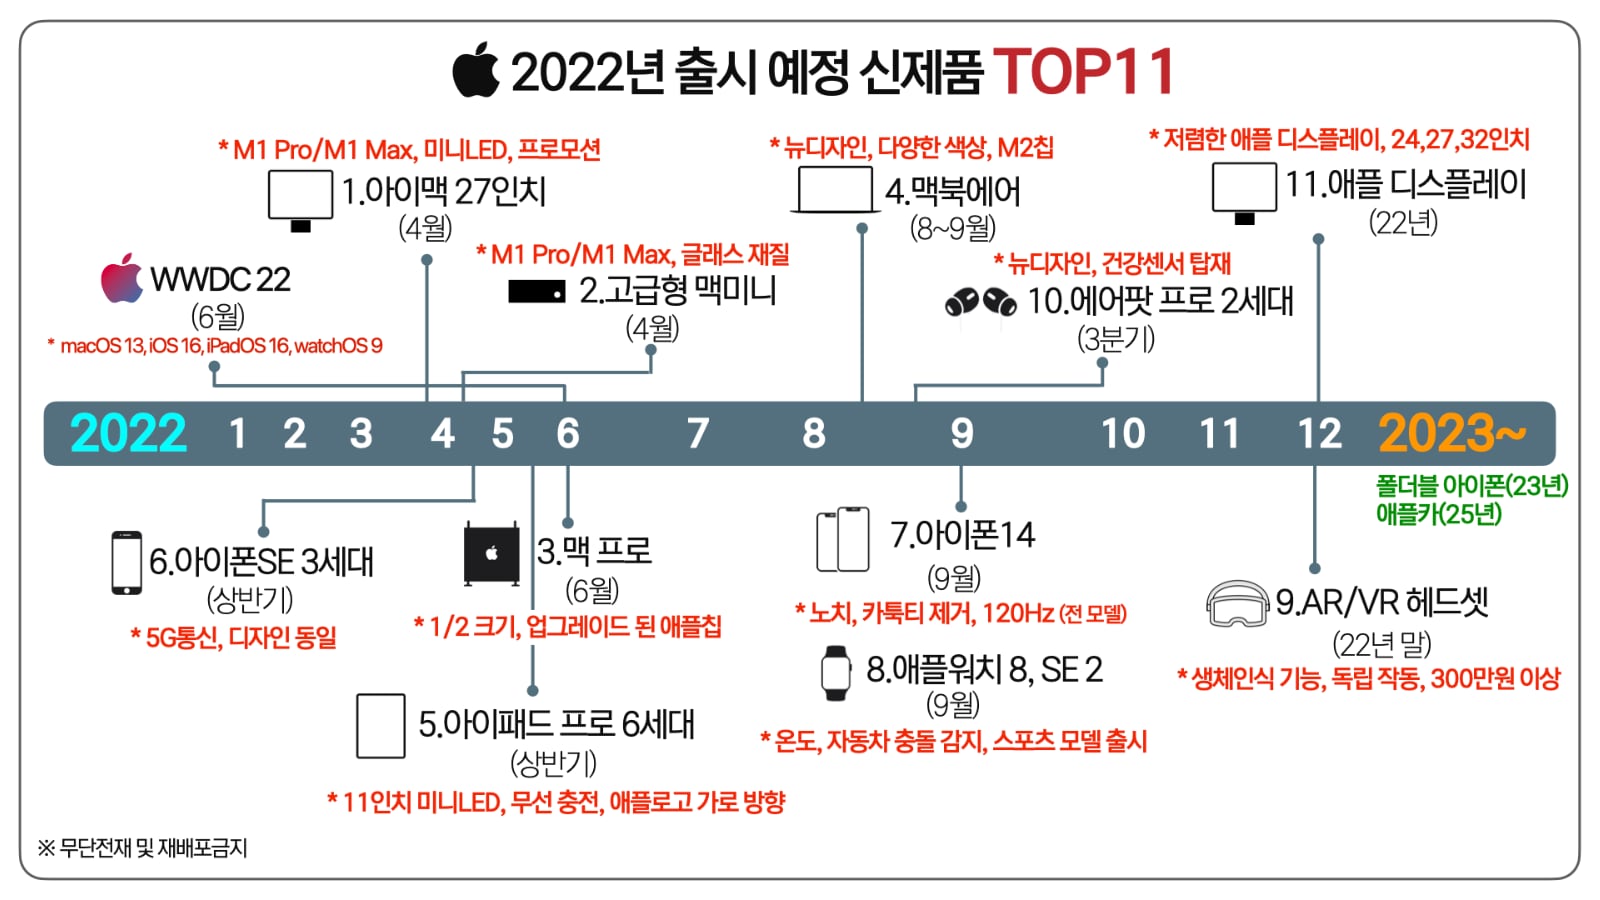 2022년 출시 예정 애플 신제품 TOP 11